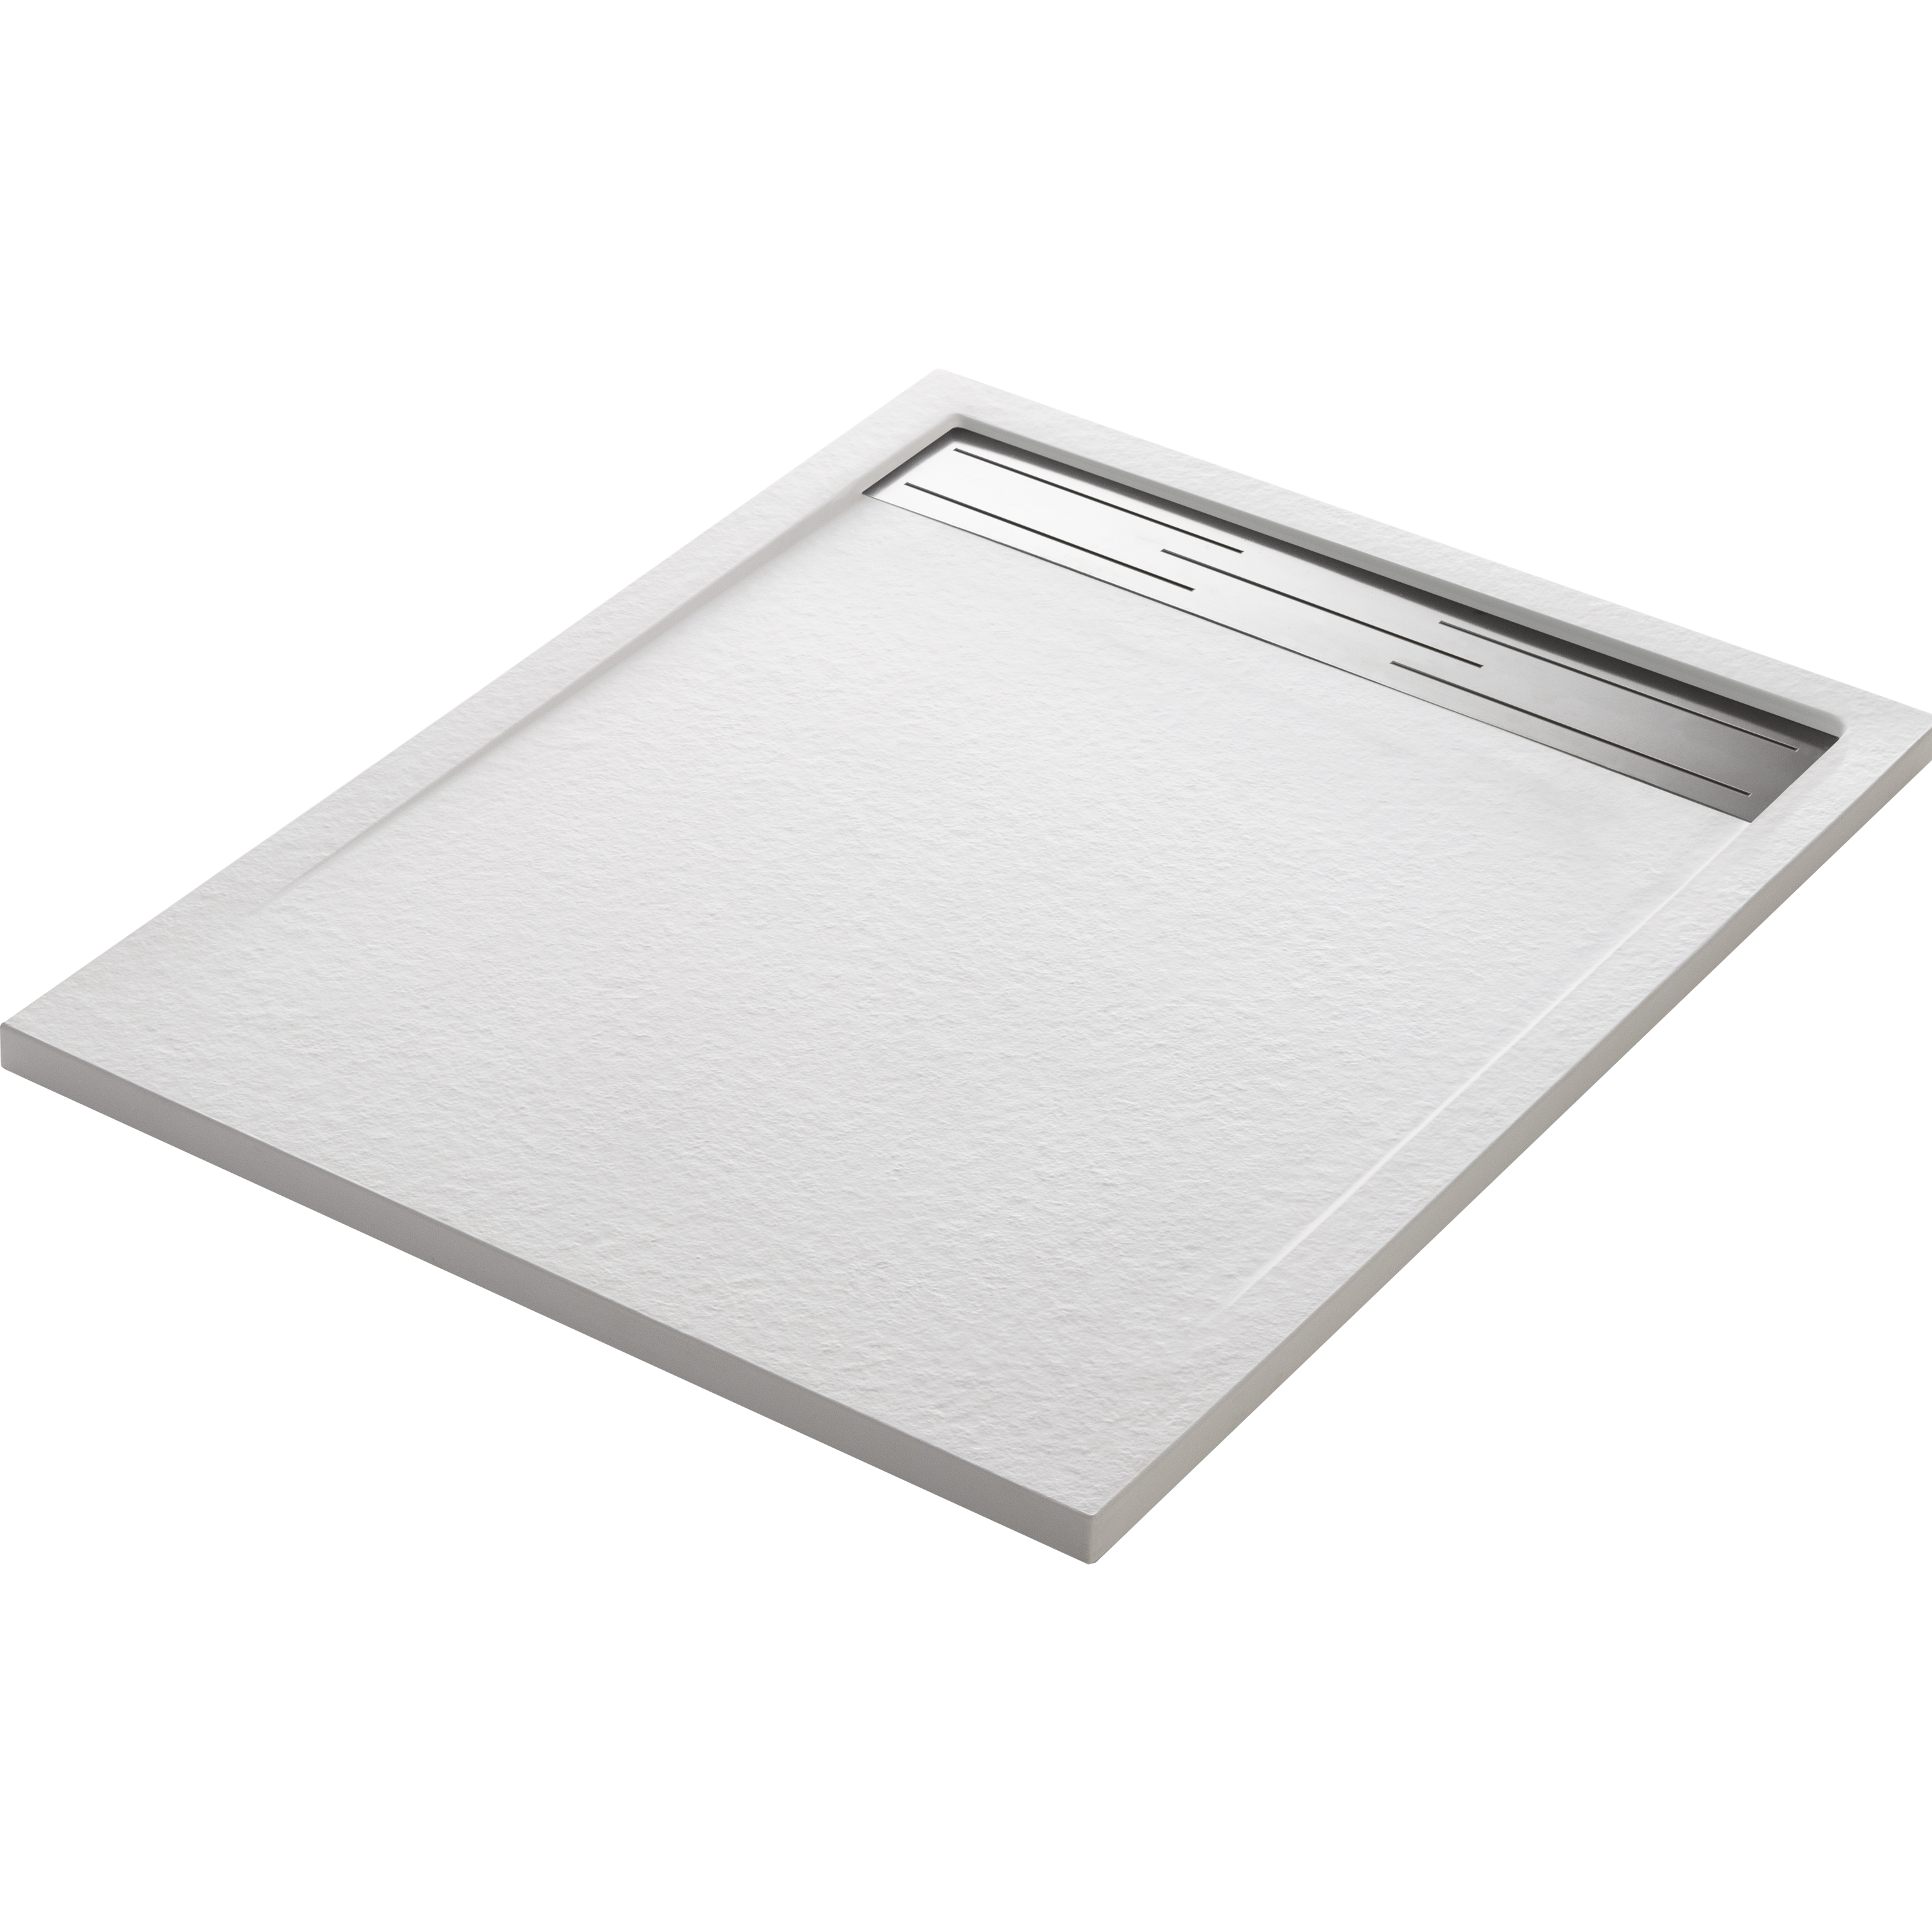 Plato de ducha neo 100x70 cm blanco